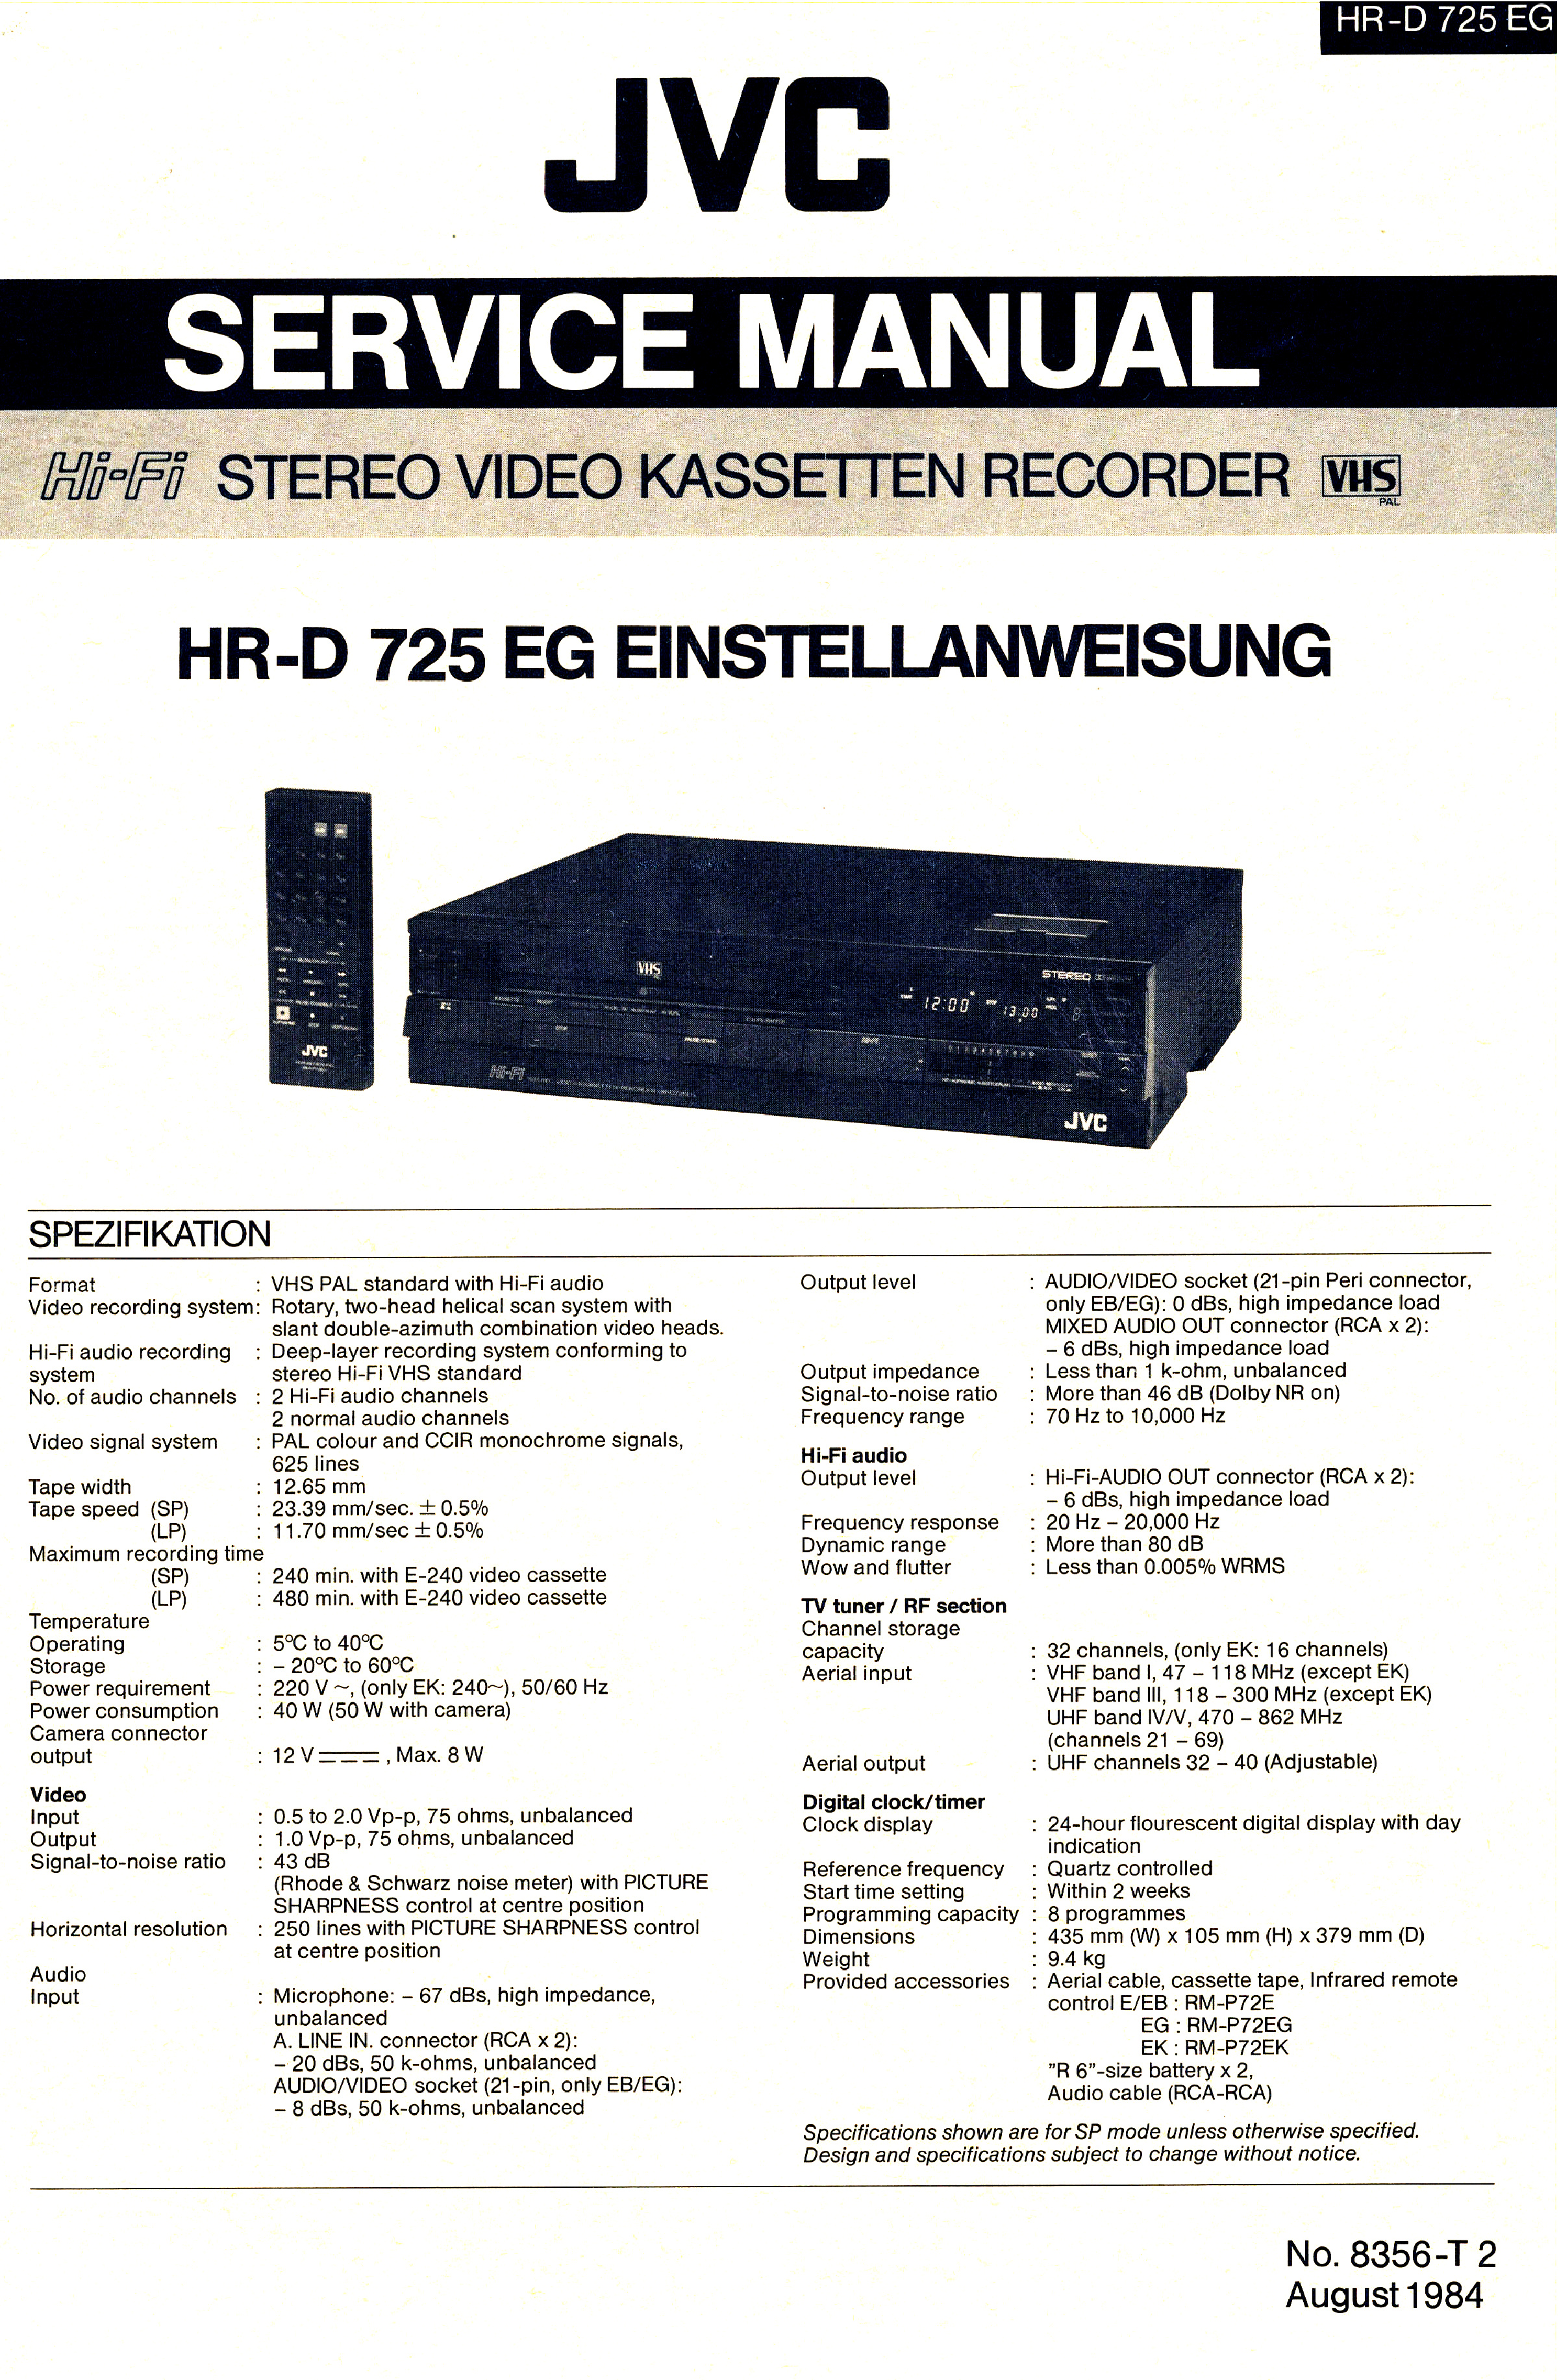 JVC HR-D 725-Daten-1984.jpg